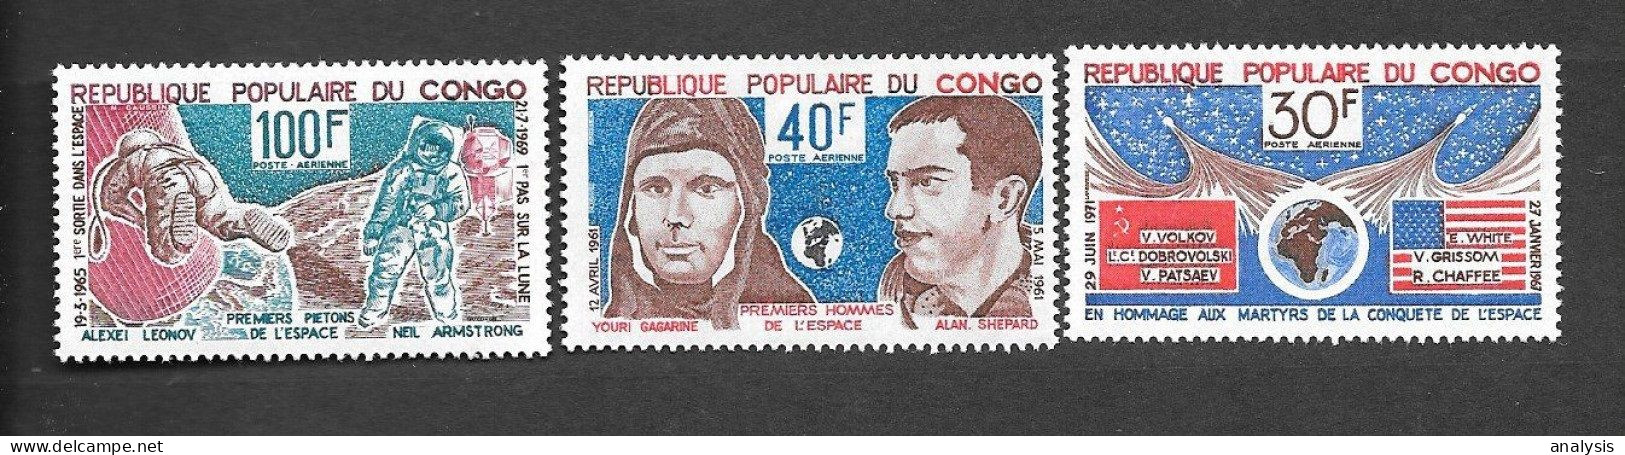 Congo Brazzaville Space 3 Stamps 1973 MNH. Gagarin "Vostok 1" "Apollo 11" "Soyuz 11" "Apollo 1" Accident - Afrika